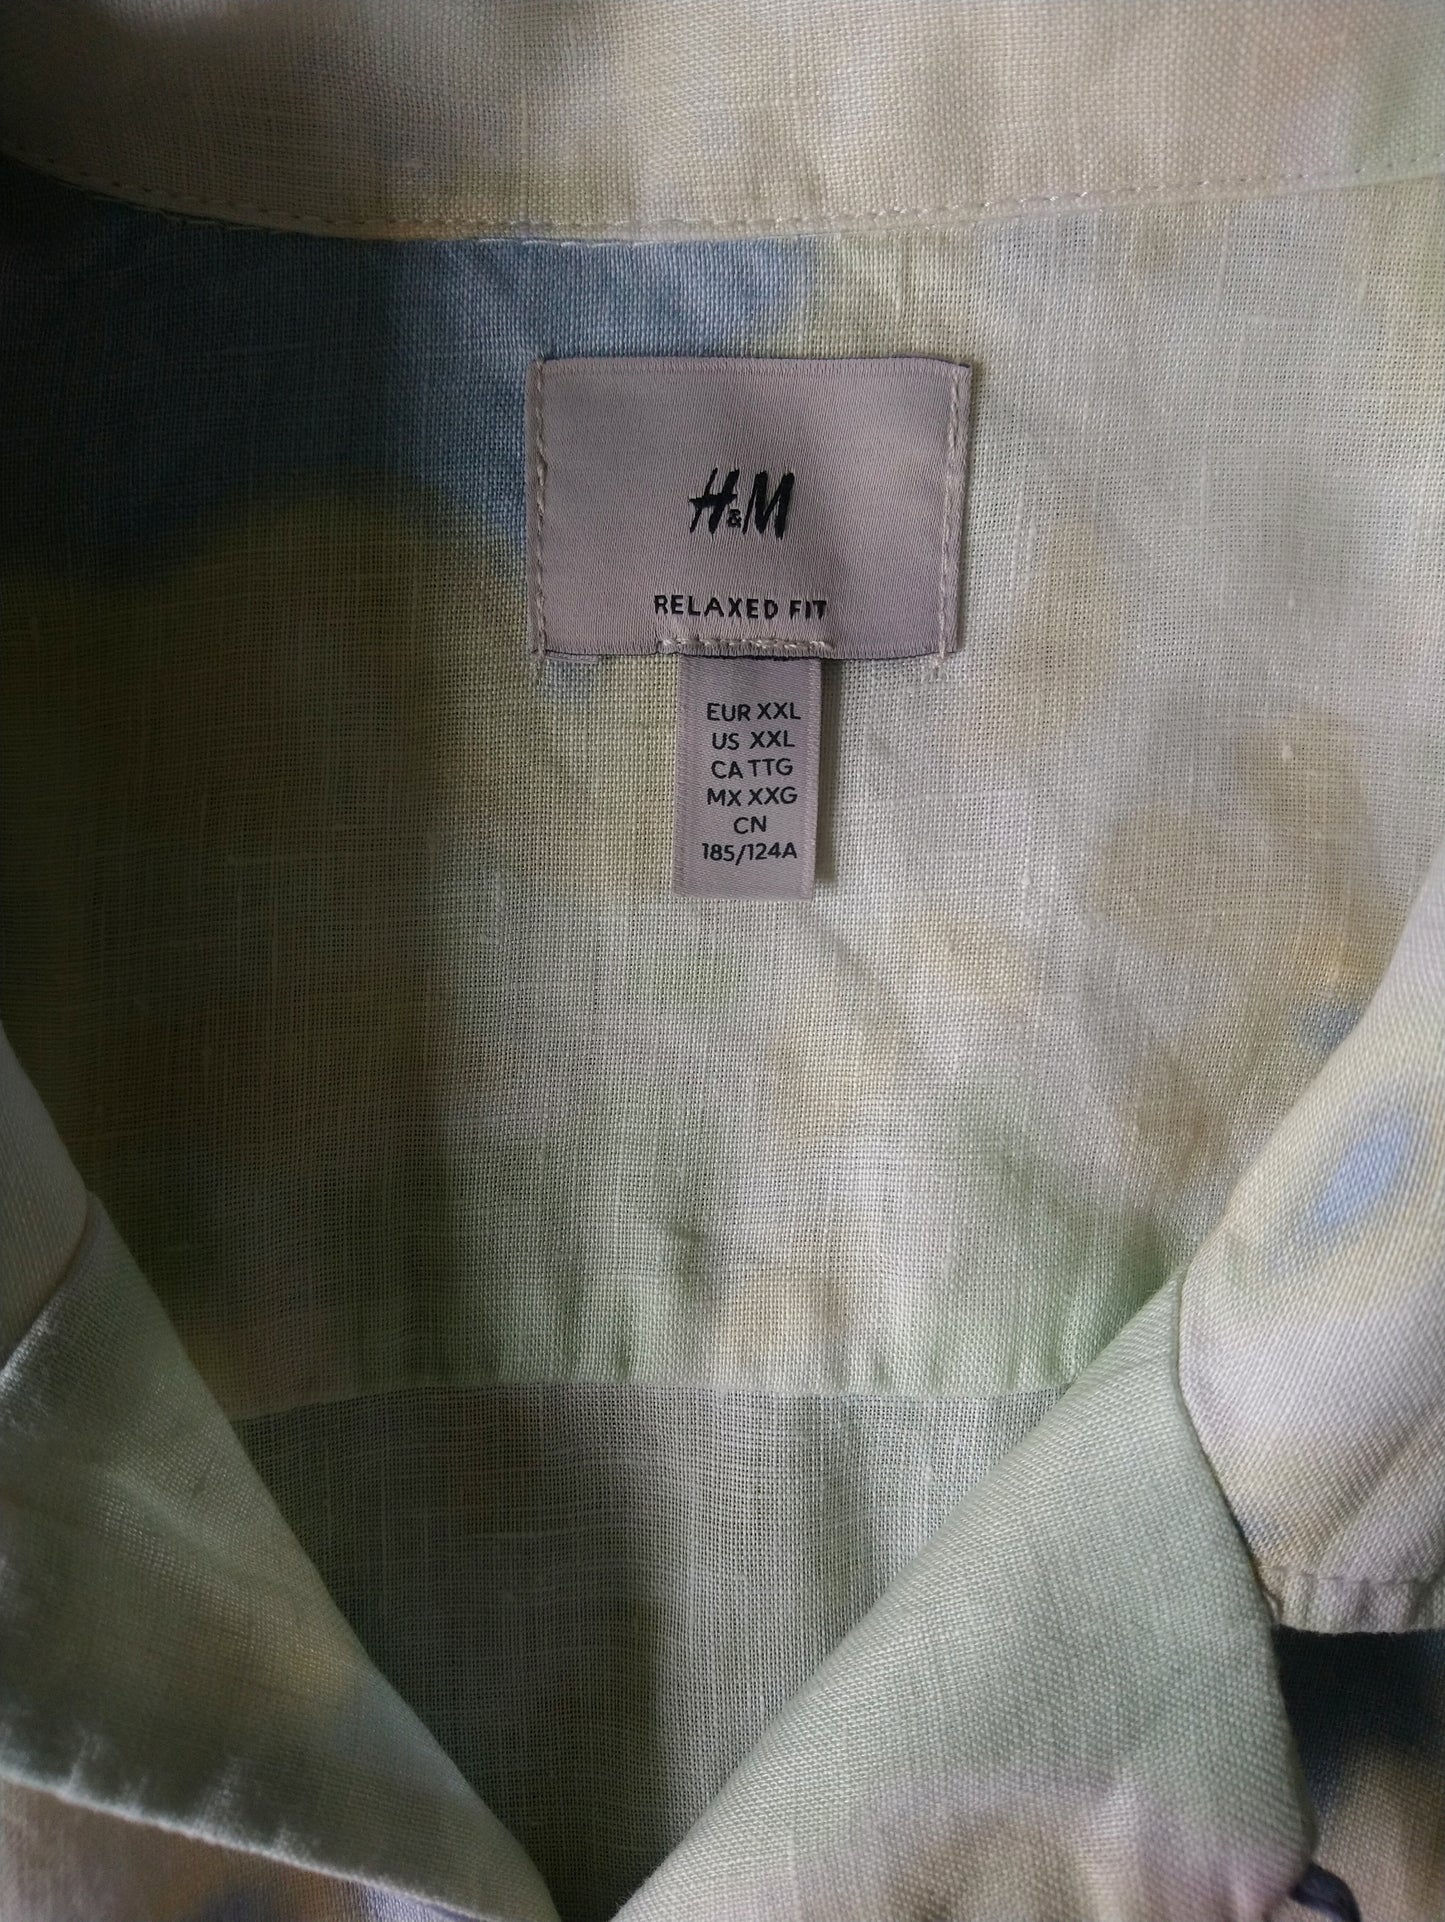 H & M Leinenhemd Kurzarm. Gelb blaugrün gefärbt. Größe 2xl / xxl. Entspannte Passform.